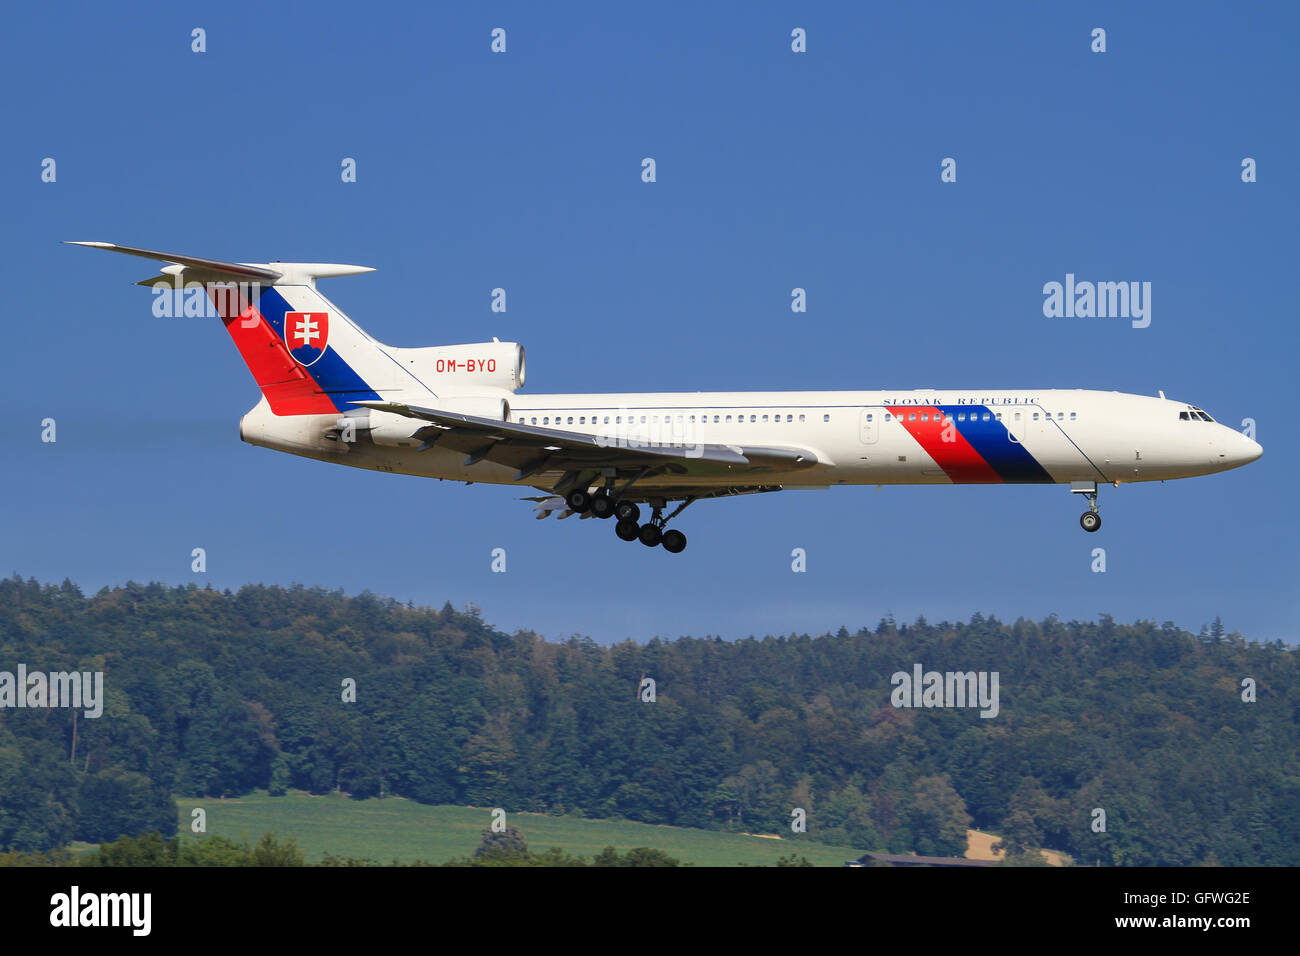 10 août 2014 : Armée de l'Air polonaise Tupolev Tu-154M, à l'atterrissage à l'aéroport de Zurich. Banque D'Images